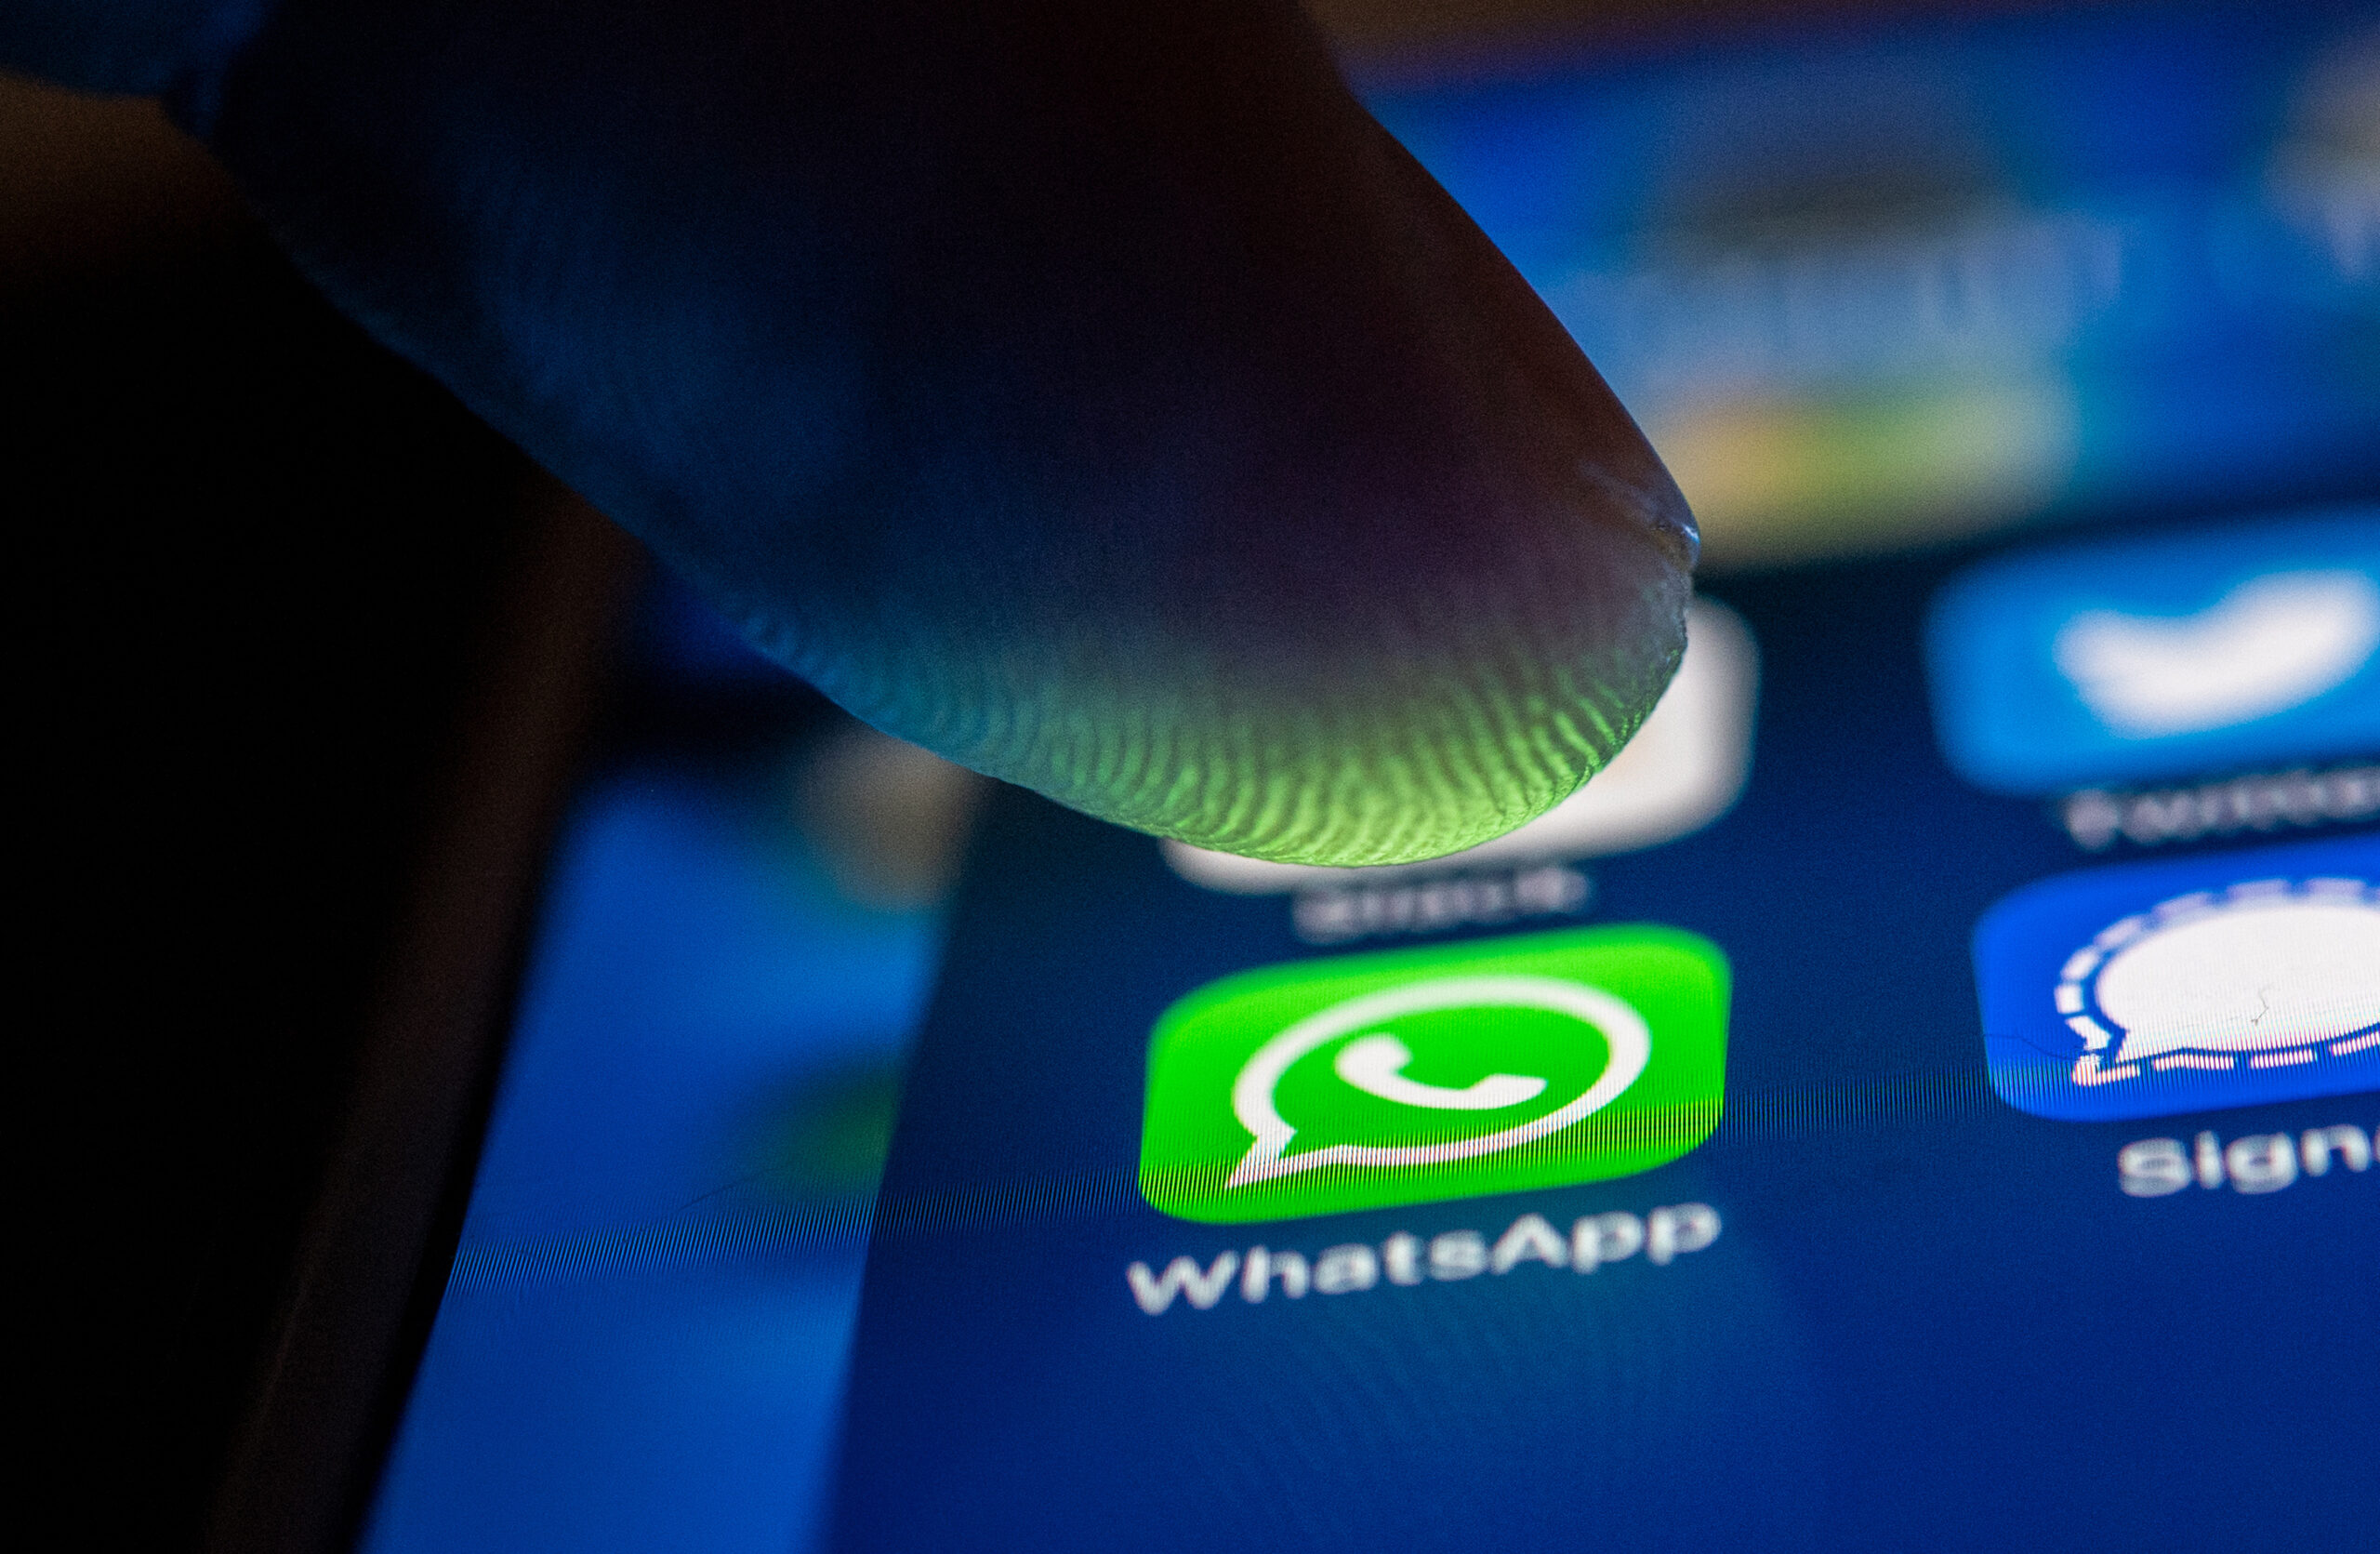 Ein Smartphone-Display in Nahaufnahme, ein Finger schwebt knapp über dem WhatsApp-Symbol.